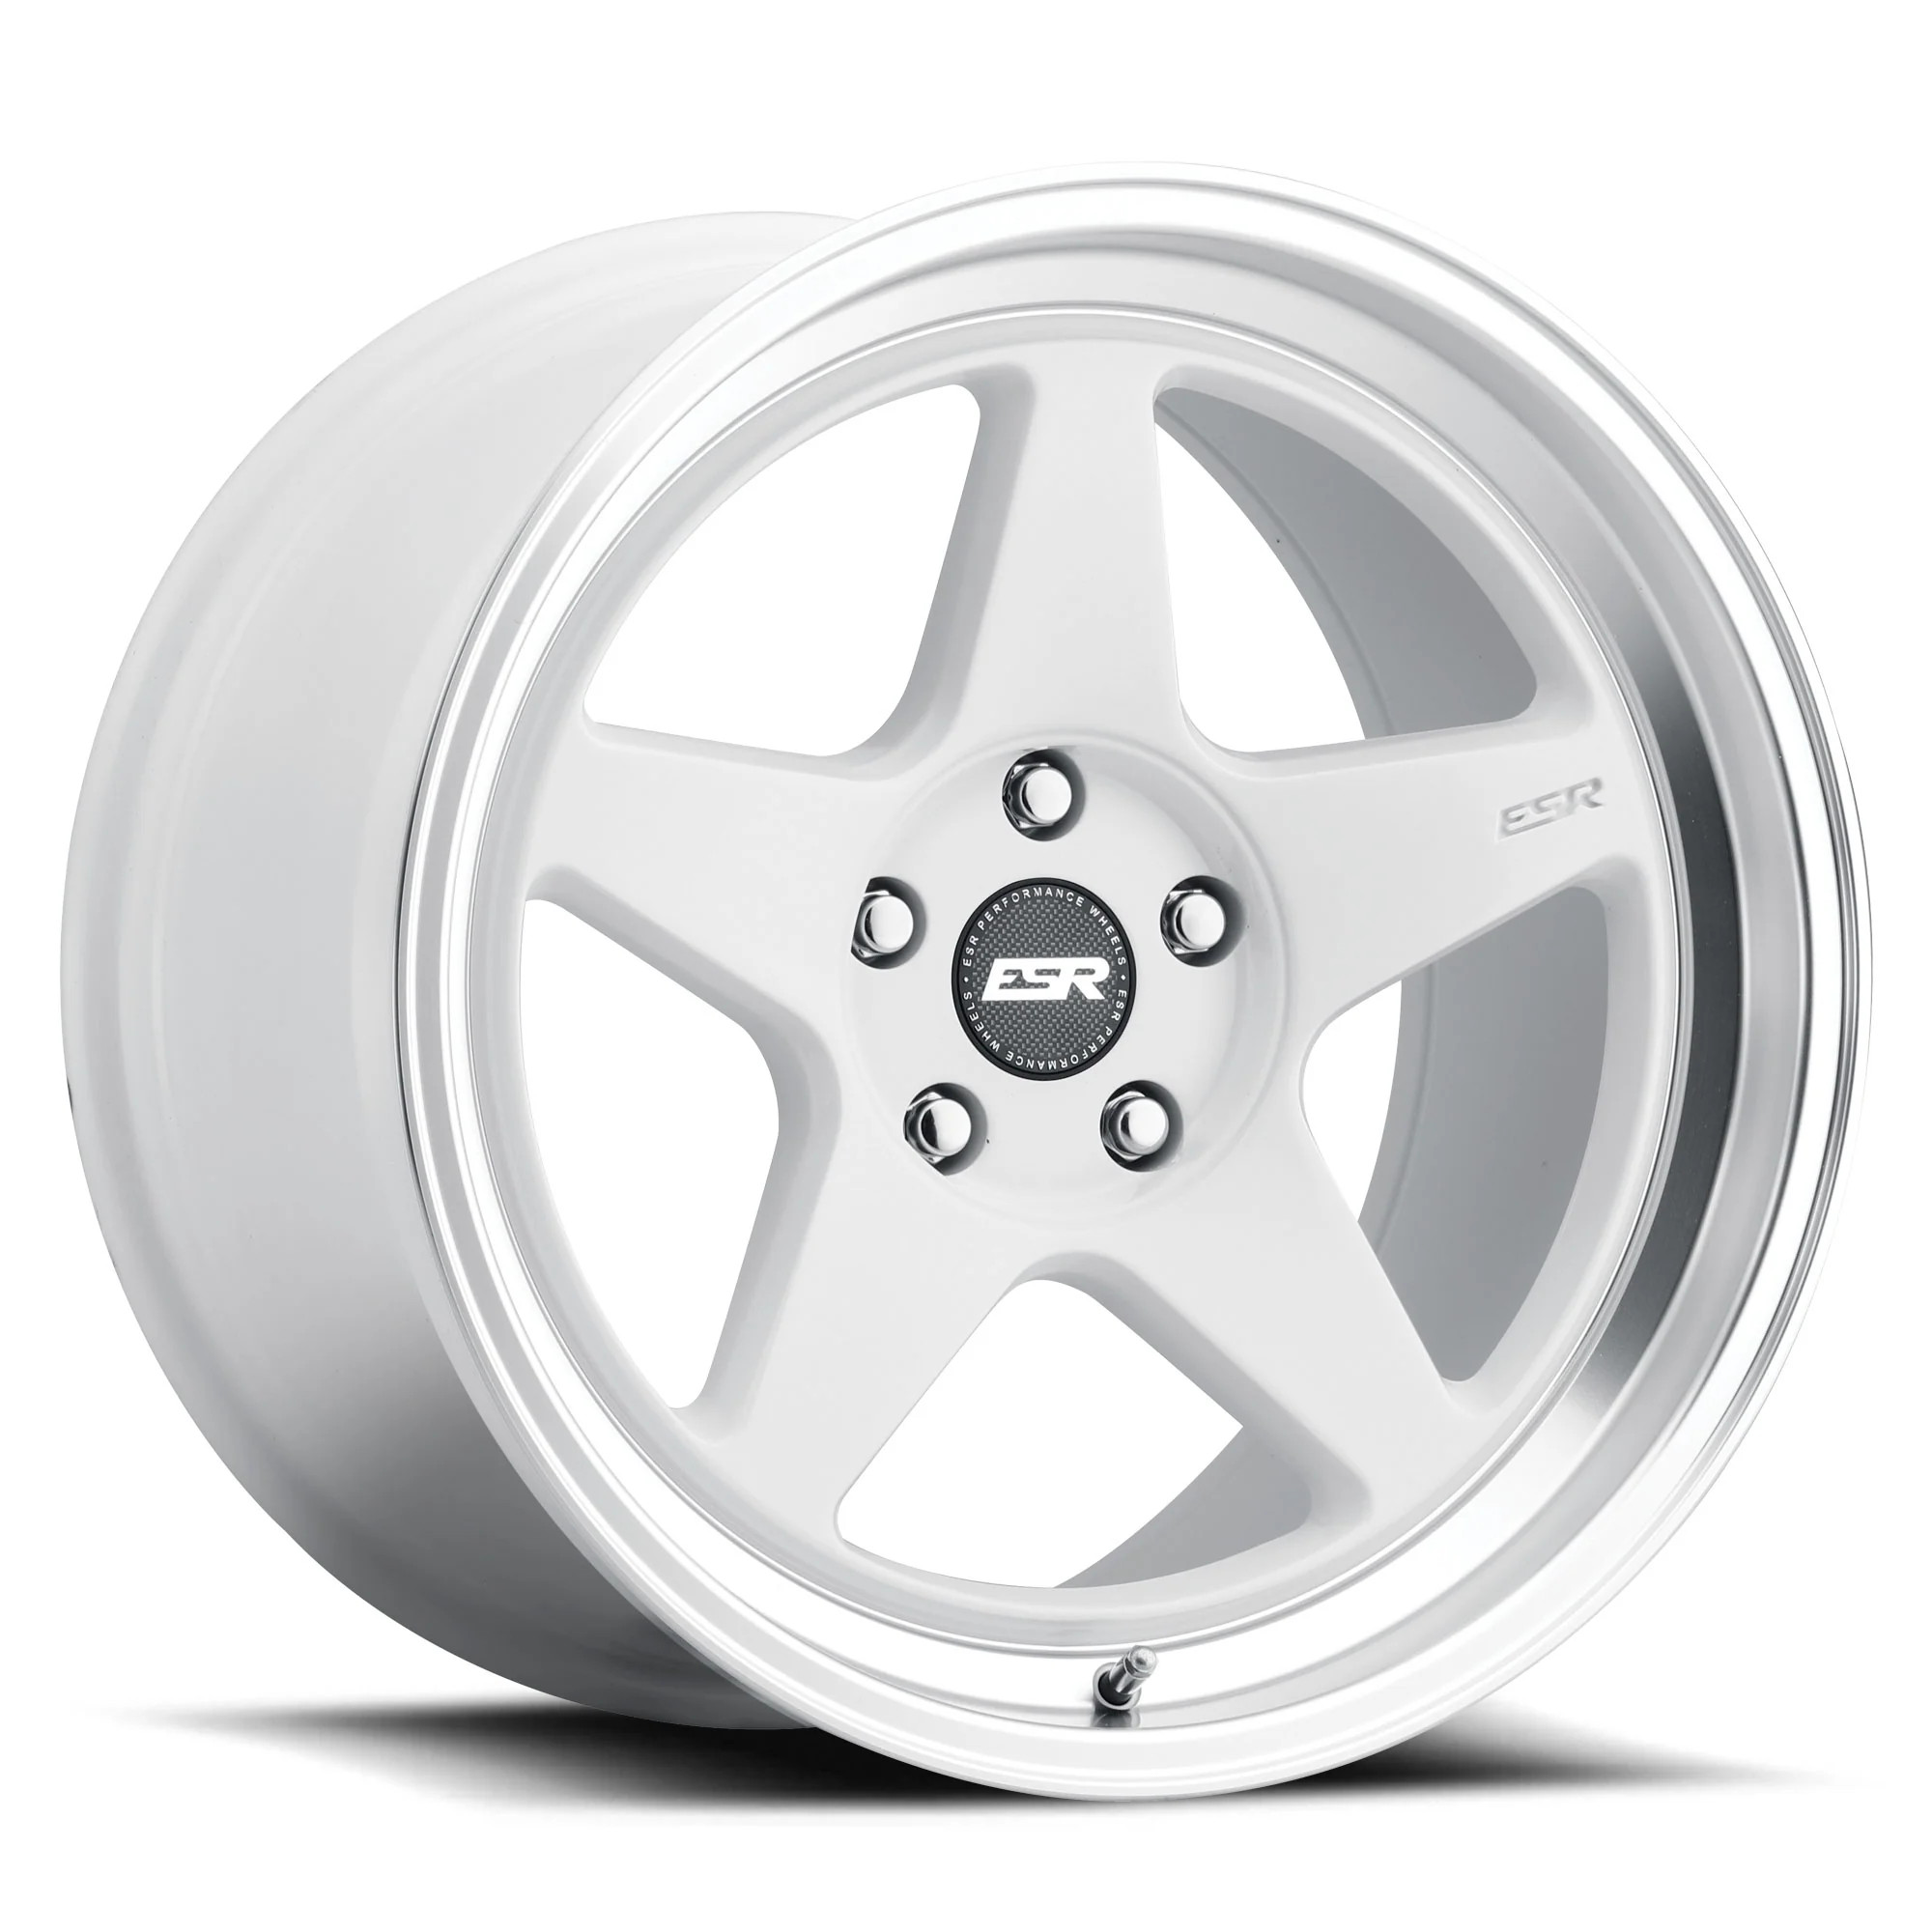 ESR Wheels CR5 18x9.5 / 5x100 BP +35 Gloss White